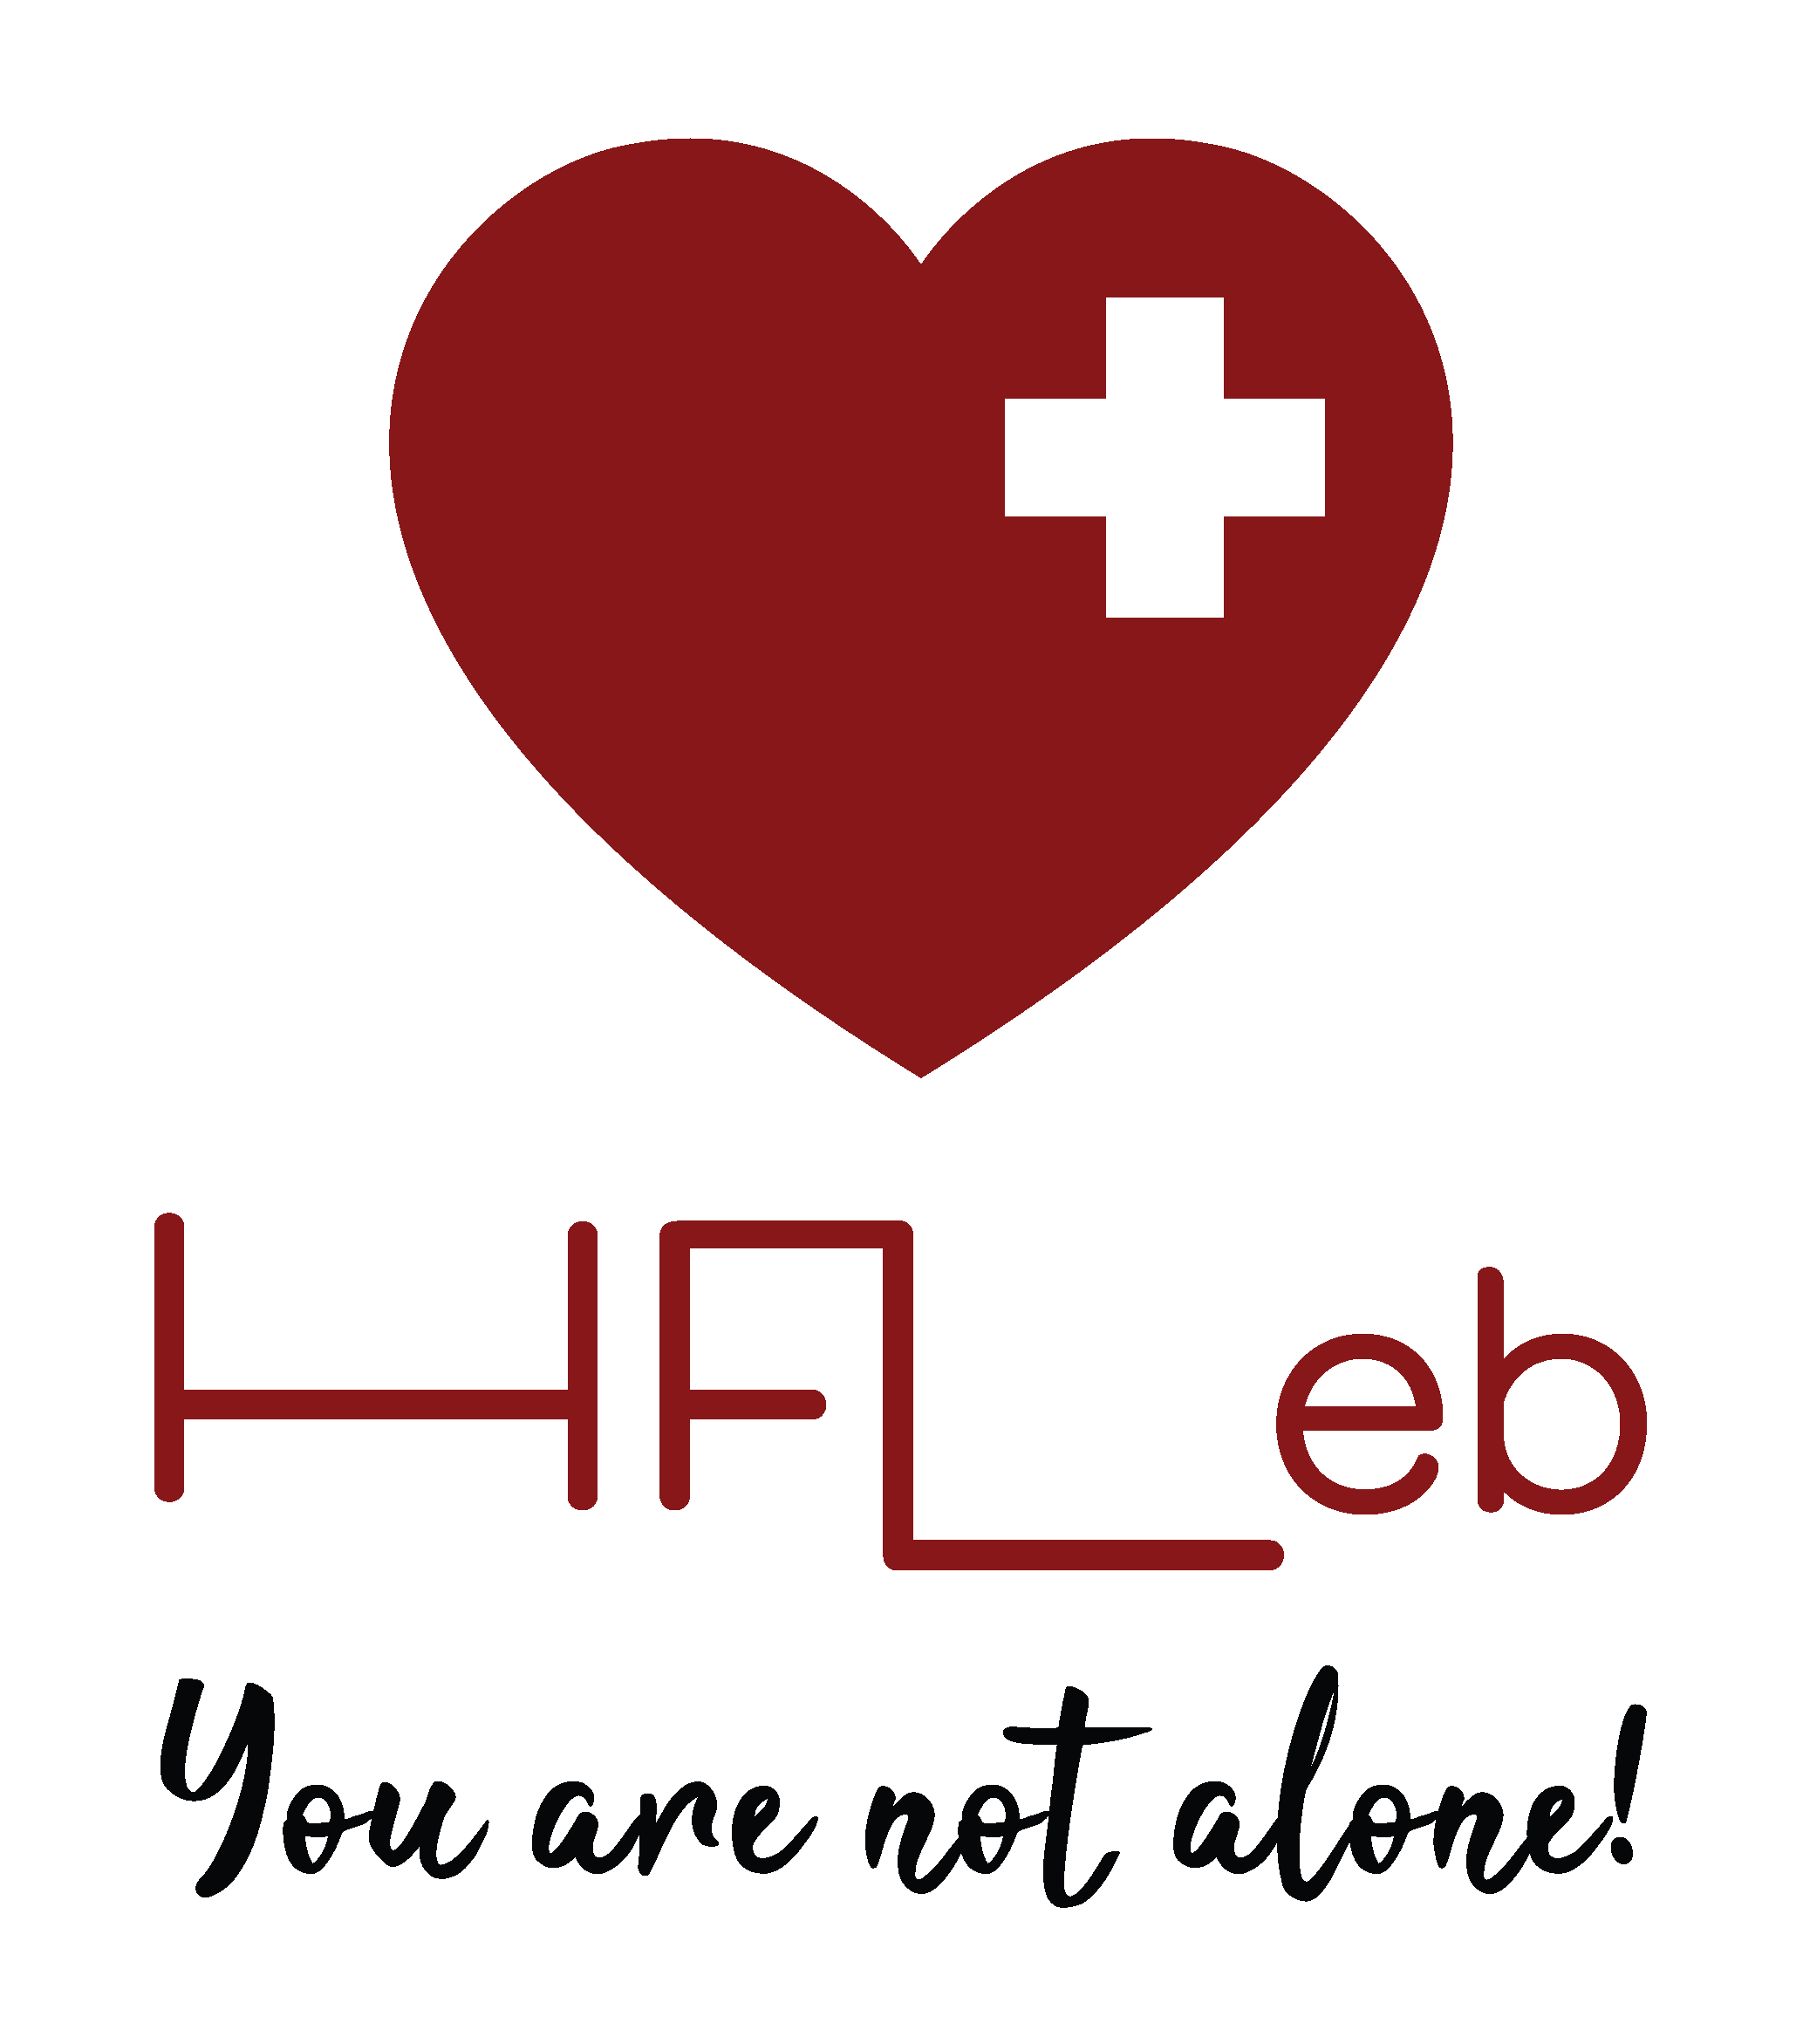 HFLeb_logo with a slogan